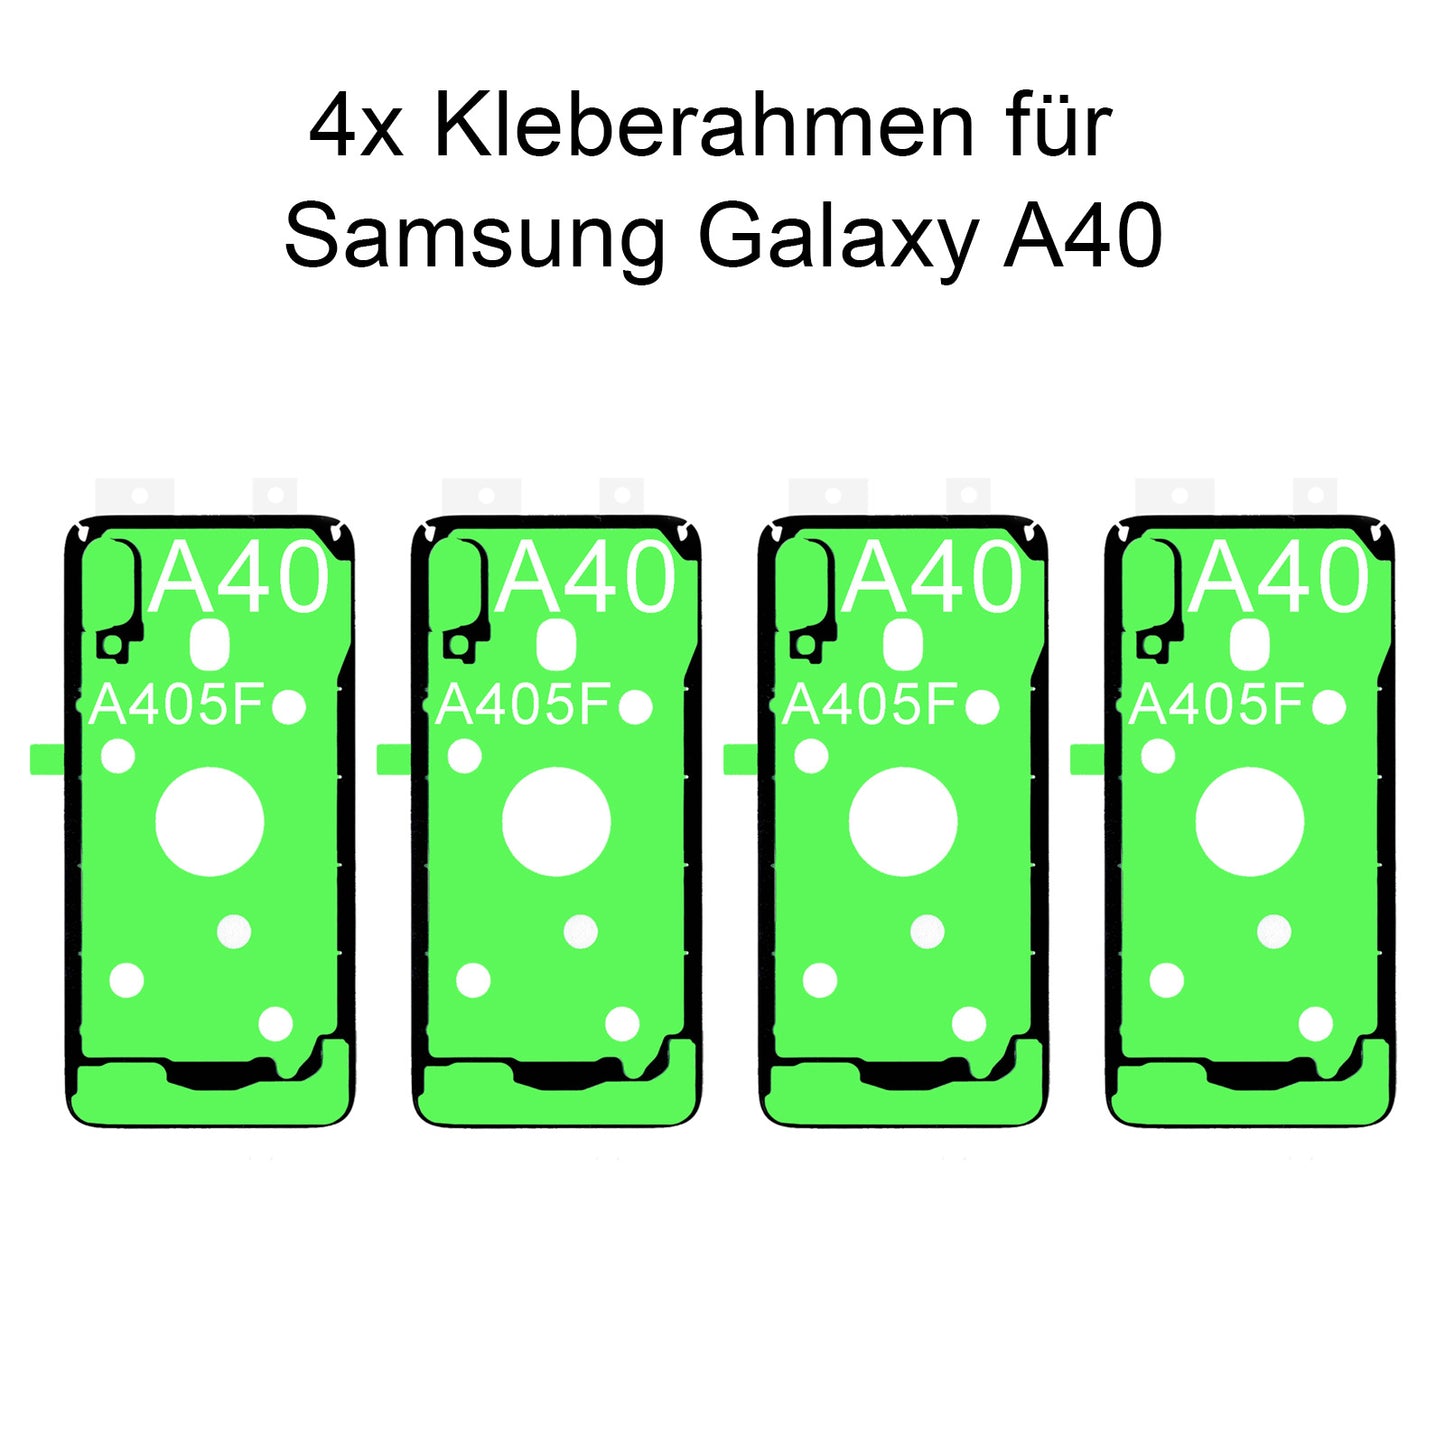 4x von unsern Samsung Galaxy A40 SM-A405F Kleberahmen, jetzt im Dinngsonline Shop entdecken und bestellen!